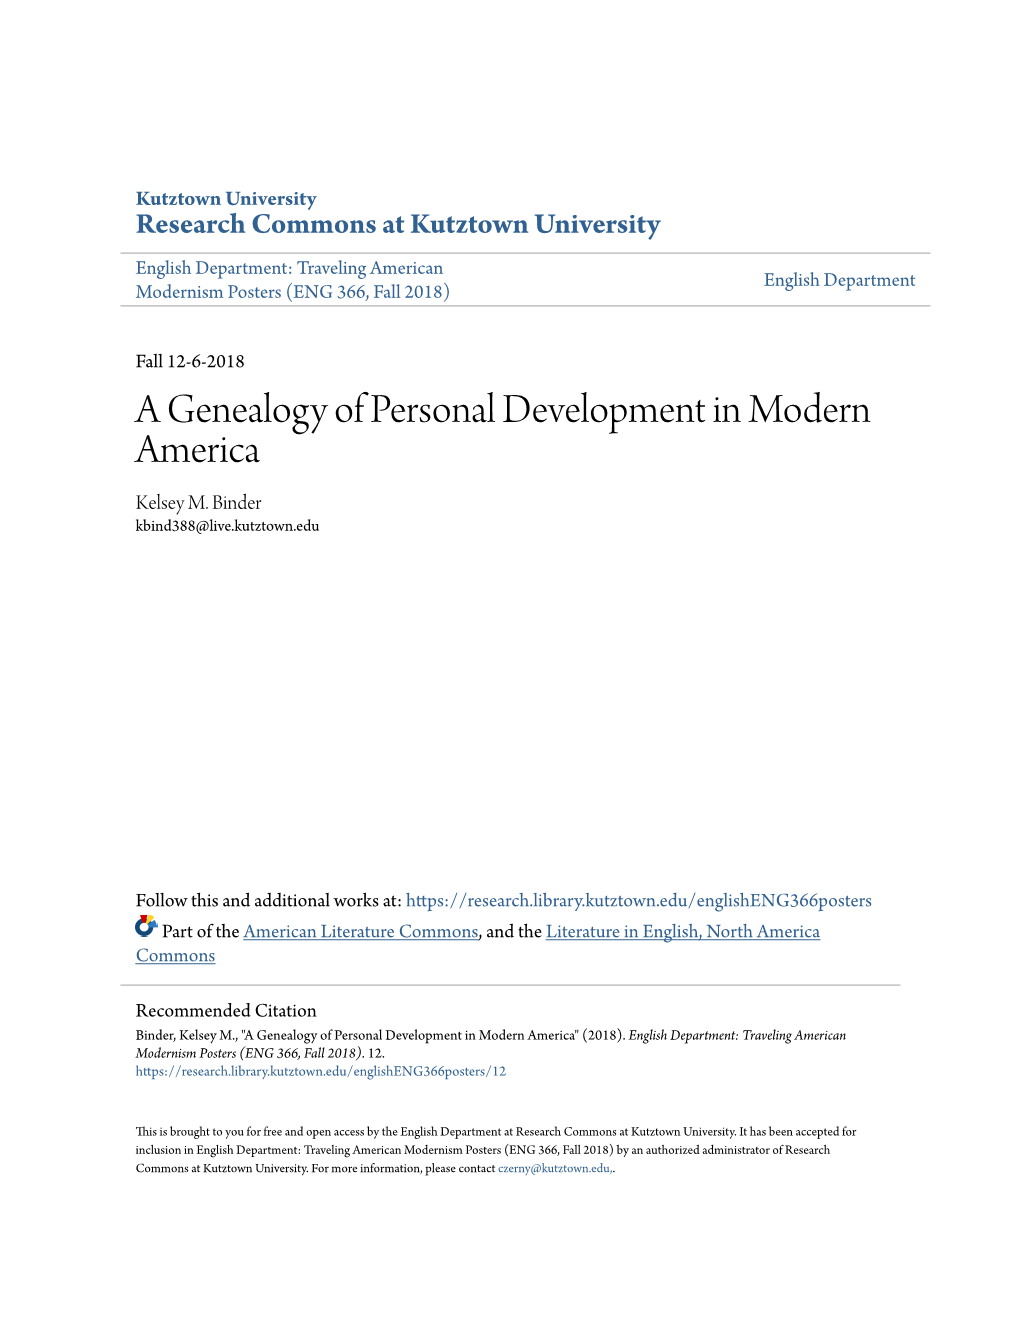 A Genealogy of Personal Development in Modern America Kelsey M